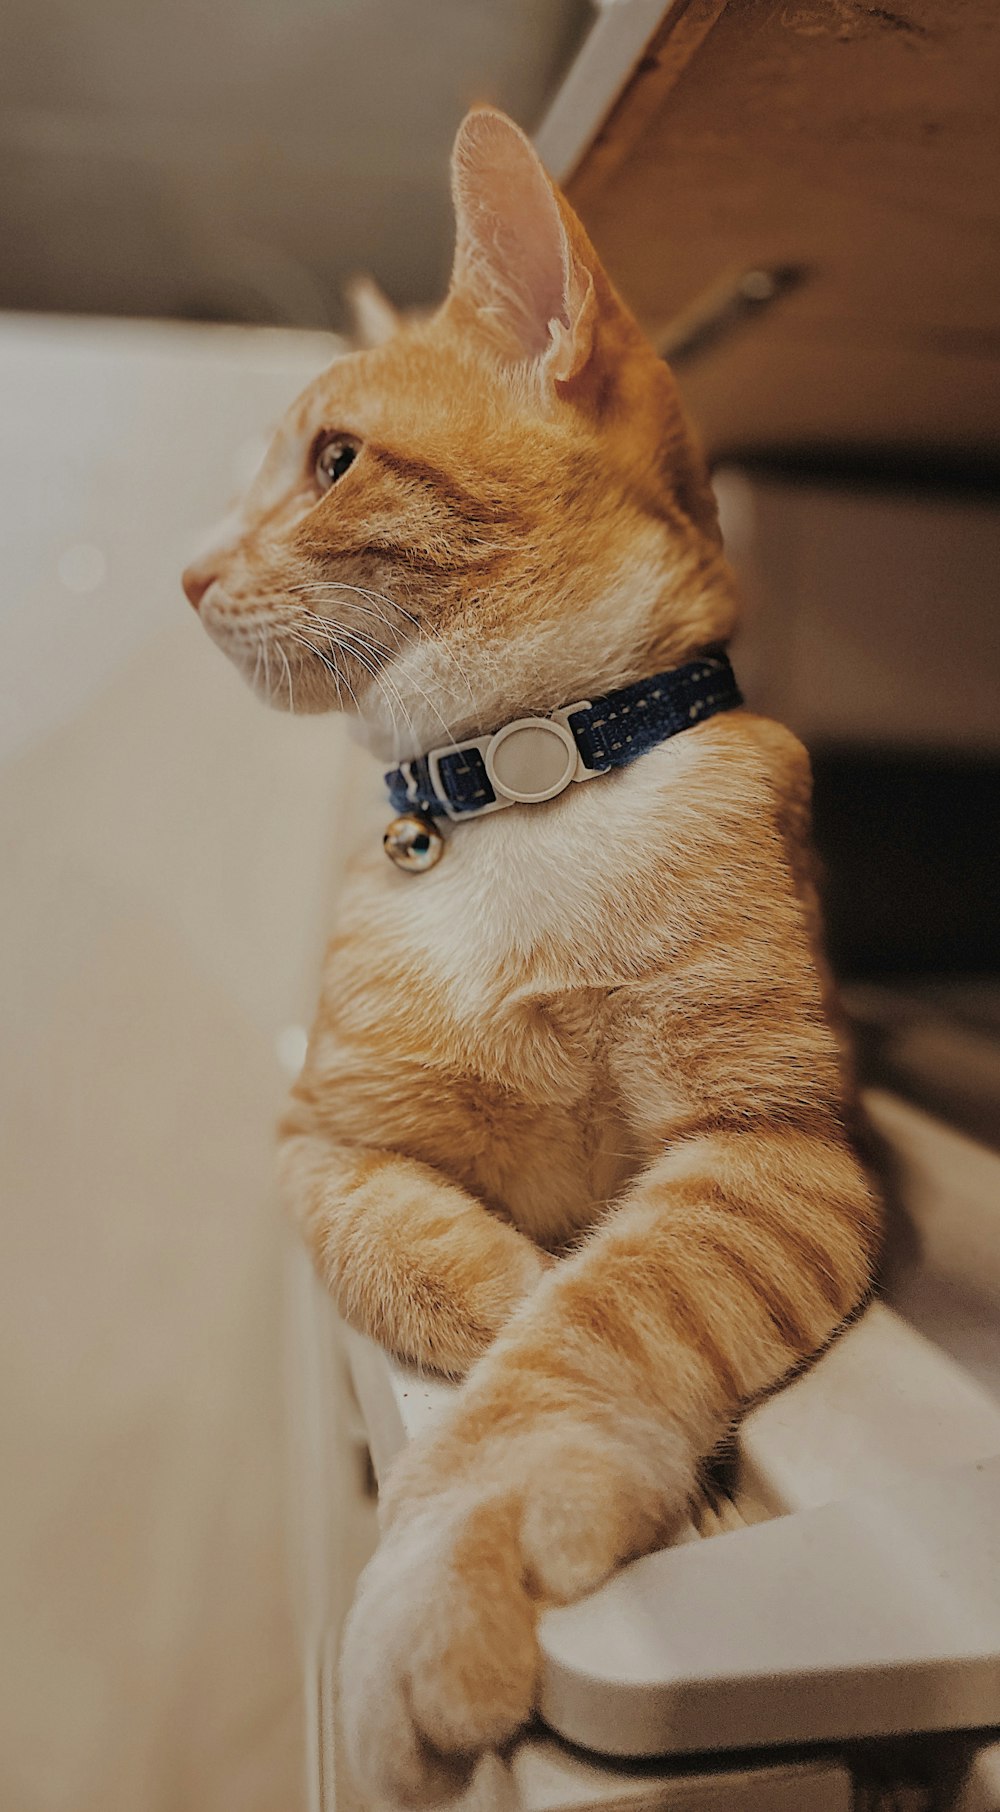 shallow focus photo of orange cat